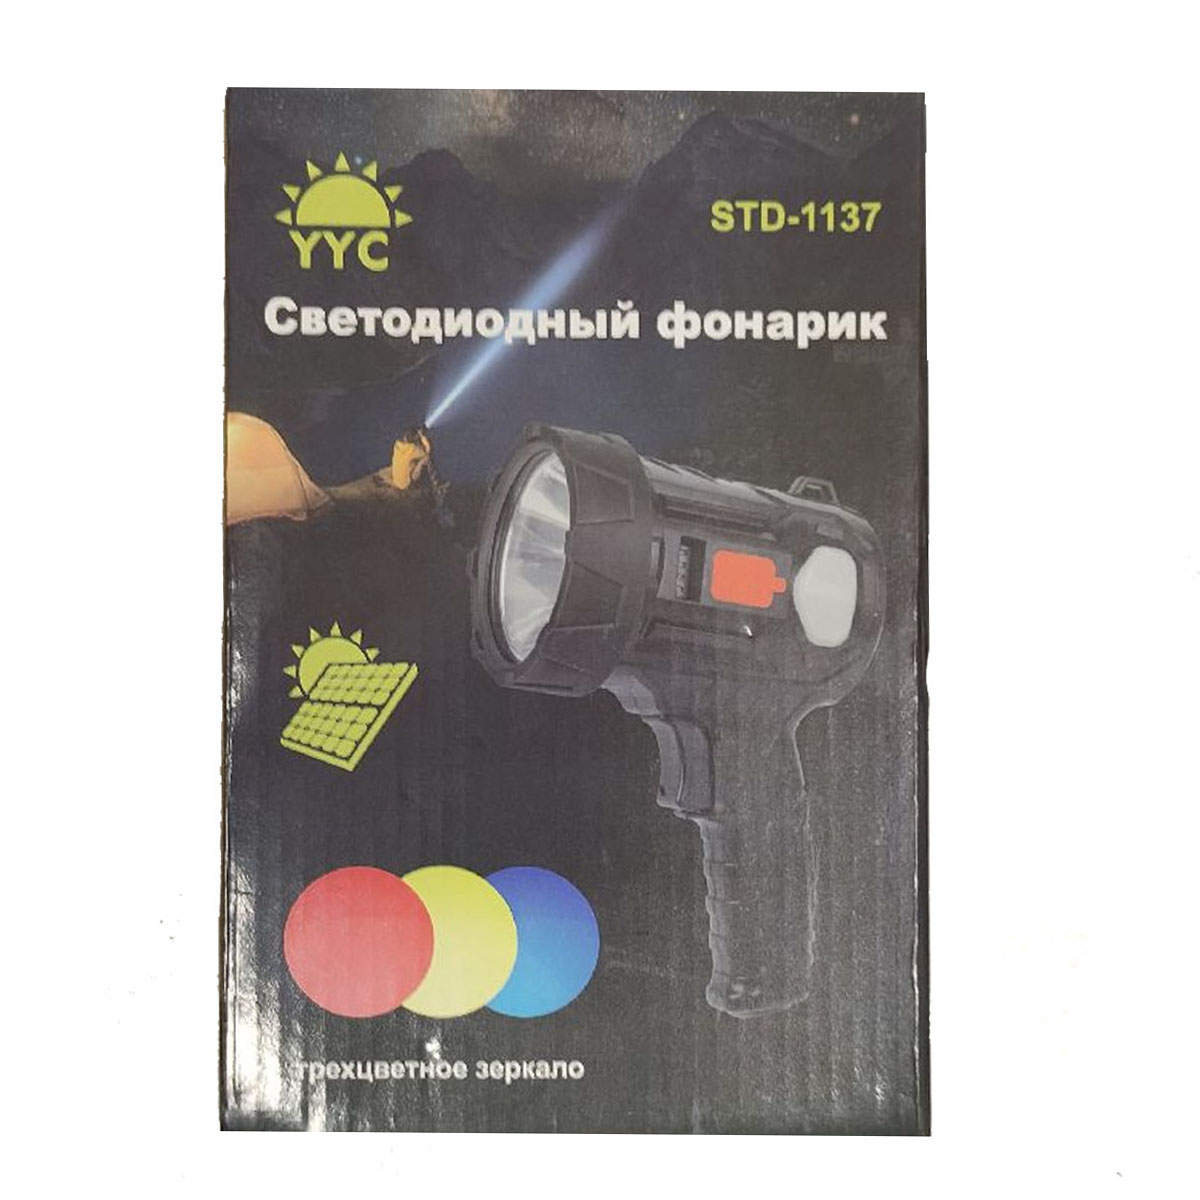 Фонарь светодиодный ручной YYC STD-1137, 3 цветных фильтра, зарядка от солнечной батареи, аккумулятора, цвет черный